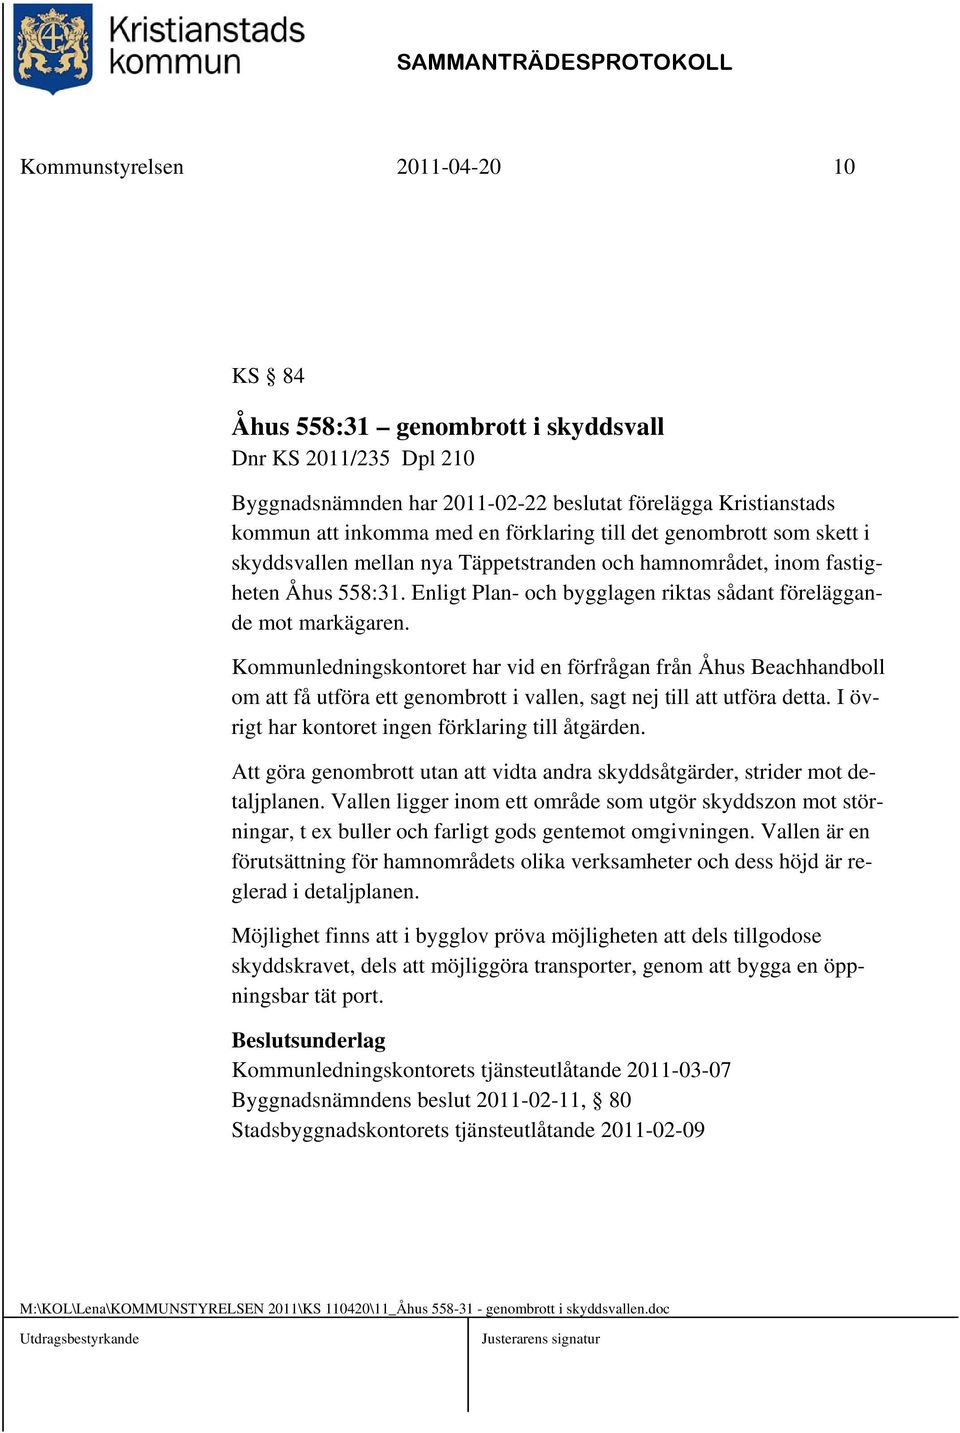 Kommunledningskontoret har vid en förfrågan från Åhus Beachhandboll om att få utföra ett genombrott i vallen, sagt nej till att utföra detta. I övrigt har kontoret ingen förklaring till åtgärden.